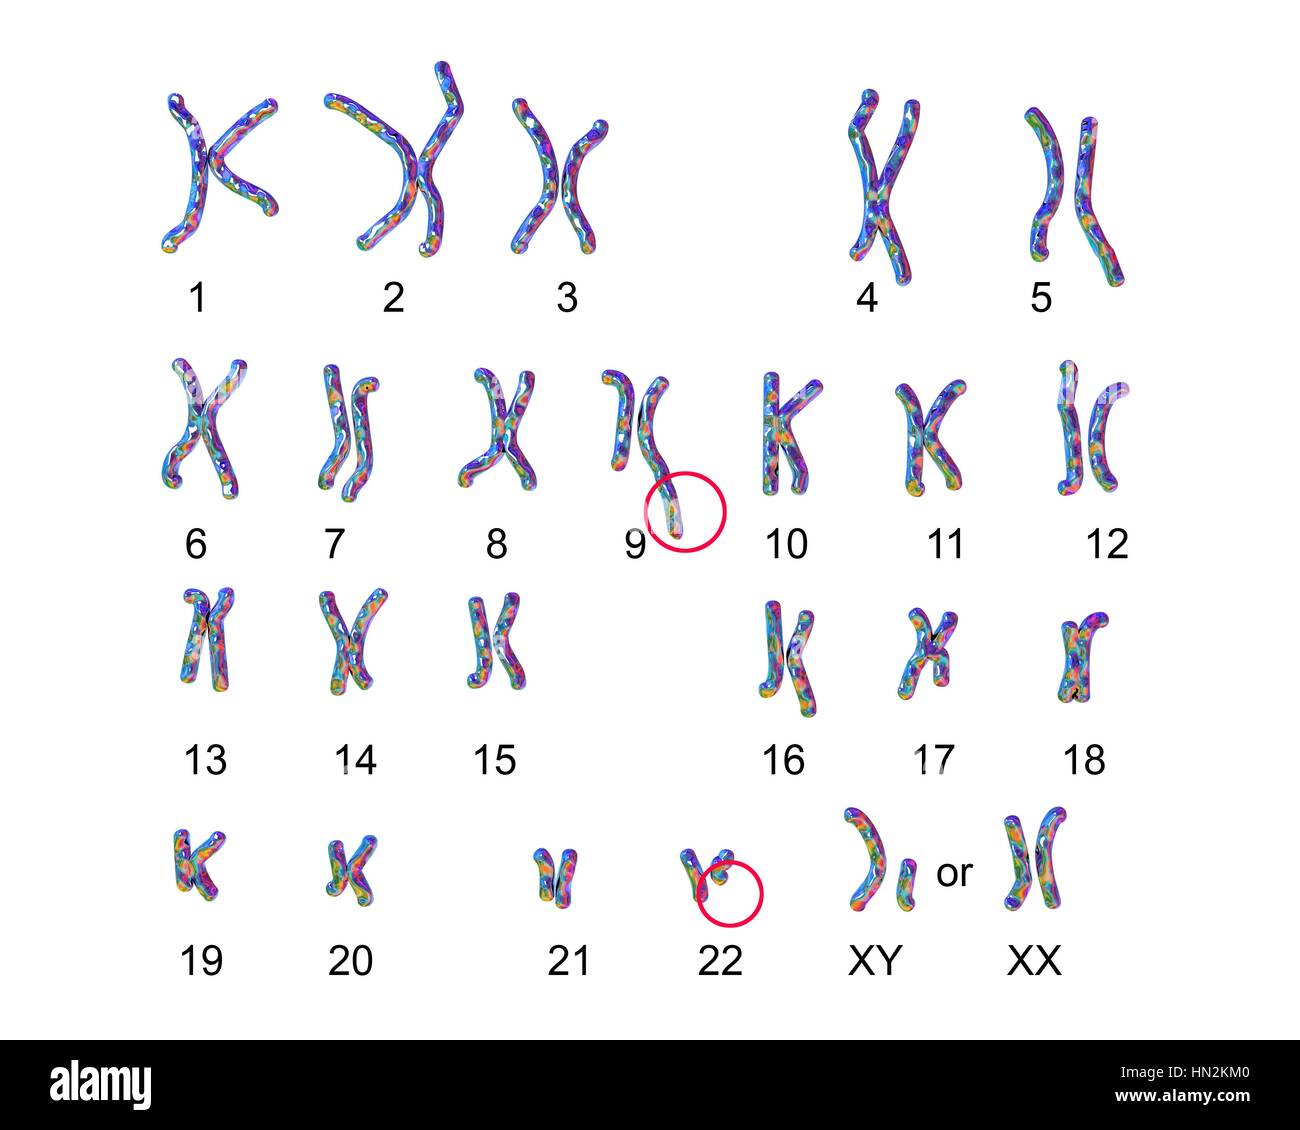 Philadelphia chromosome.Computer ilustración del cariotipo masculino o femenino (conjunto de cromosomas) un cromosoma defectuoso de cada uno de los pares 9 (centro), 22 (centro inferior).Los defectos,en el lado derecho,dos pares de cromosomas para causar leucemia mieloide crónica (LMC).Los 46 cromosomas del cariotipo humano son Foto de stock